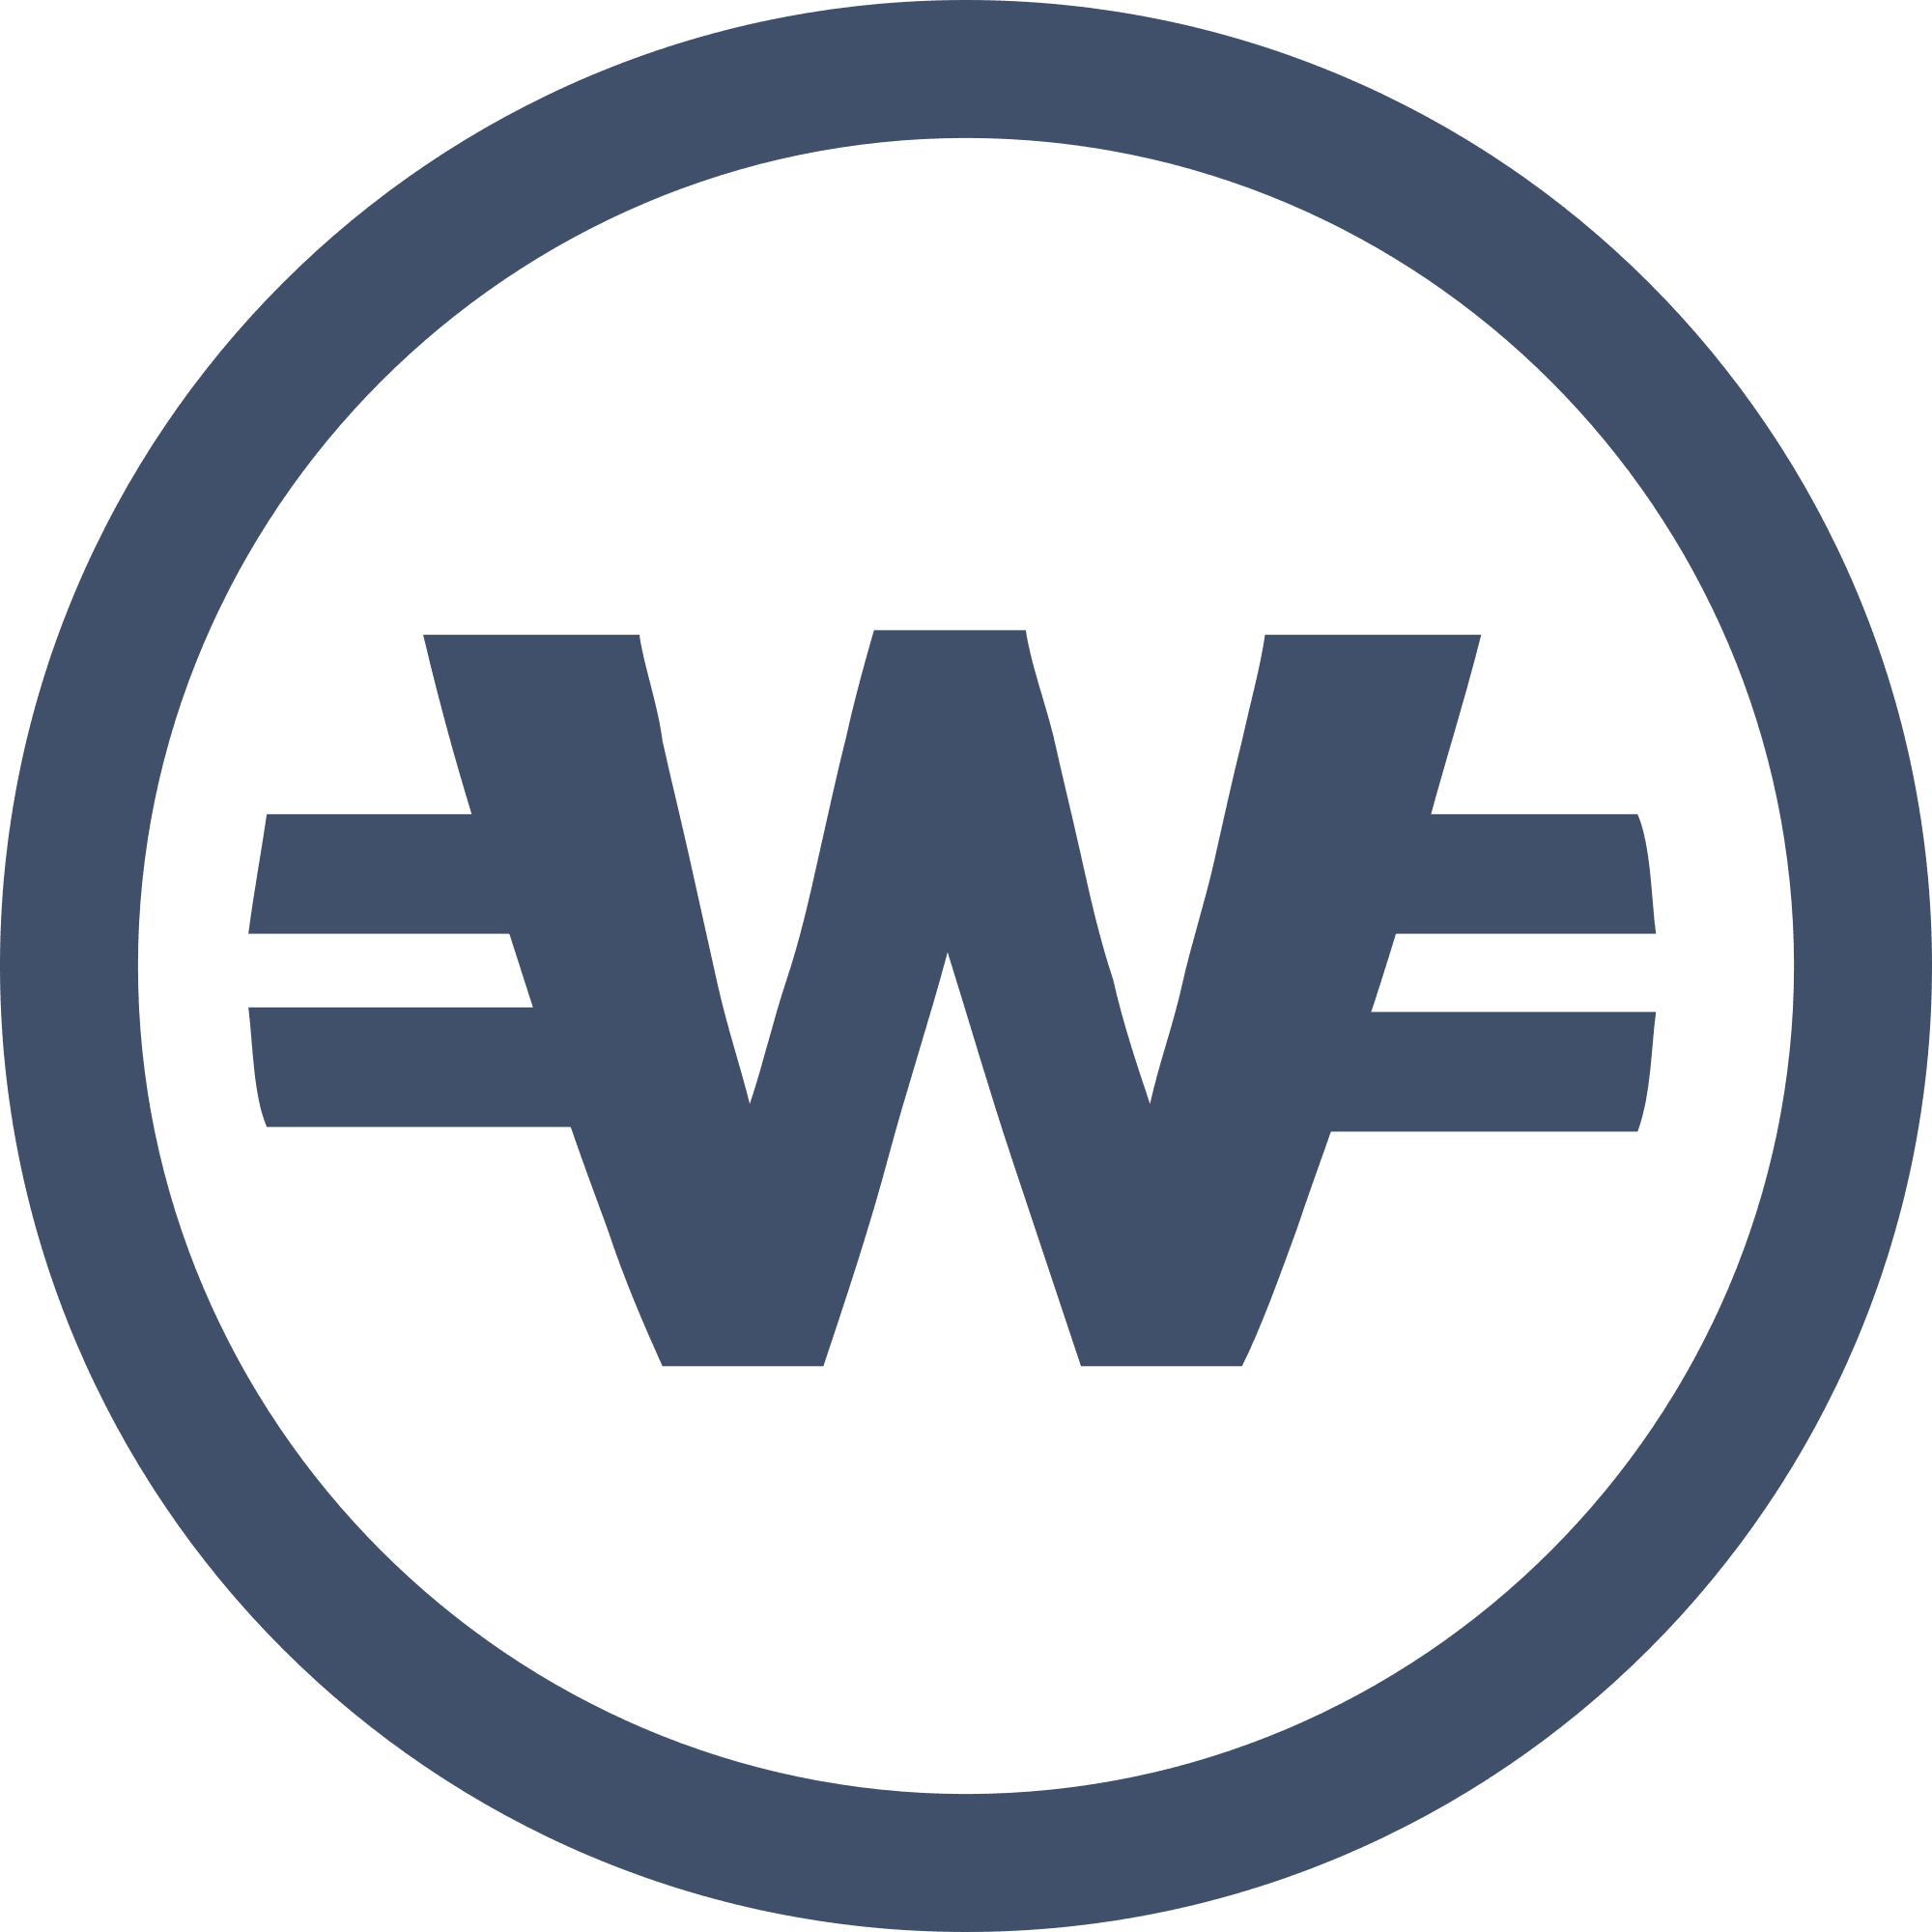 WhiteCoin logo in png format